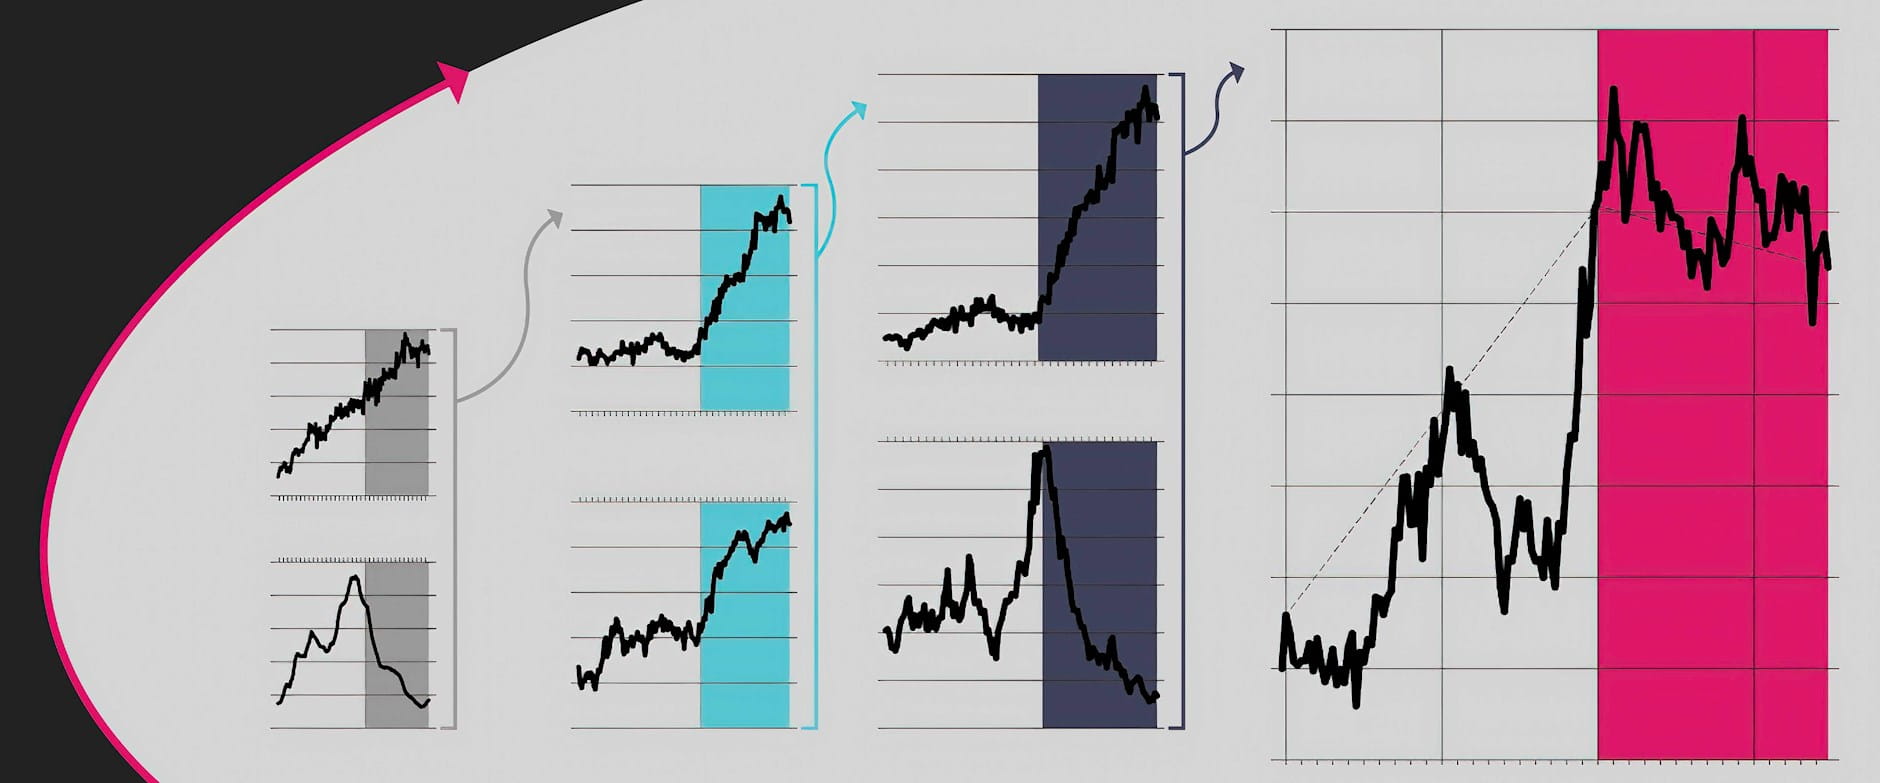 Color chart illustrations depicting liquidity